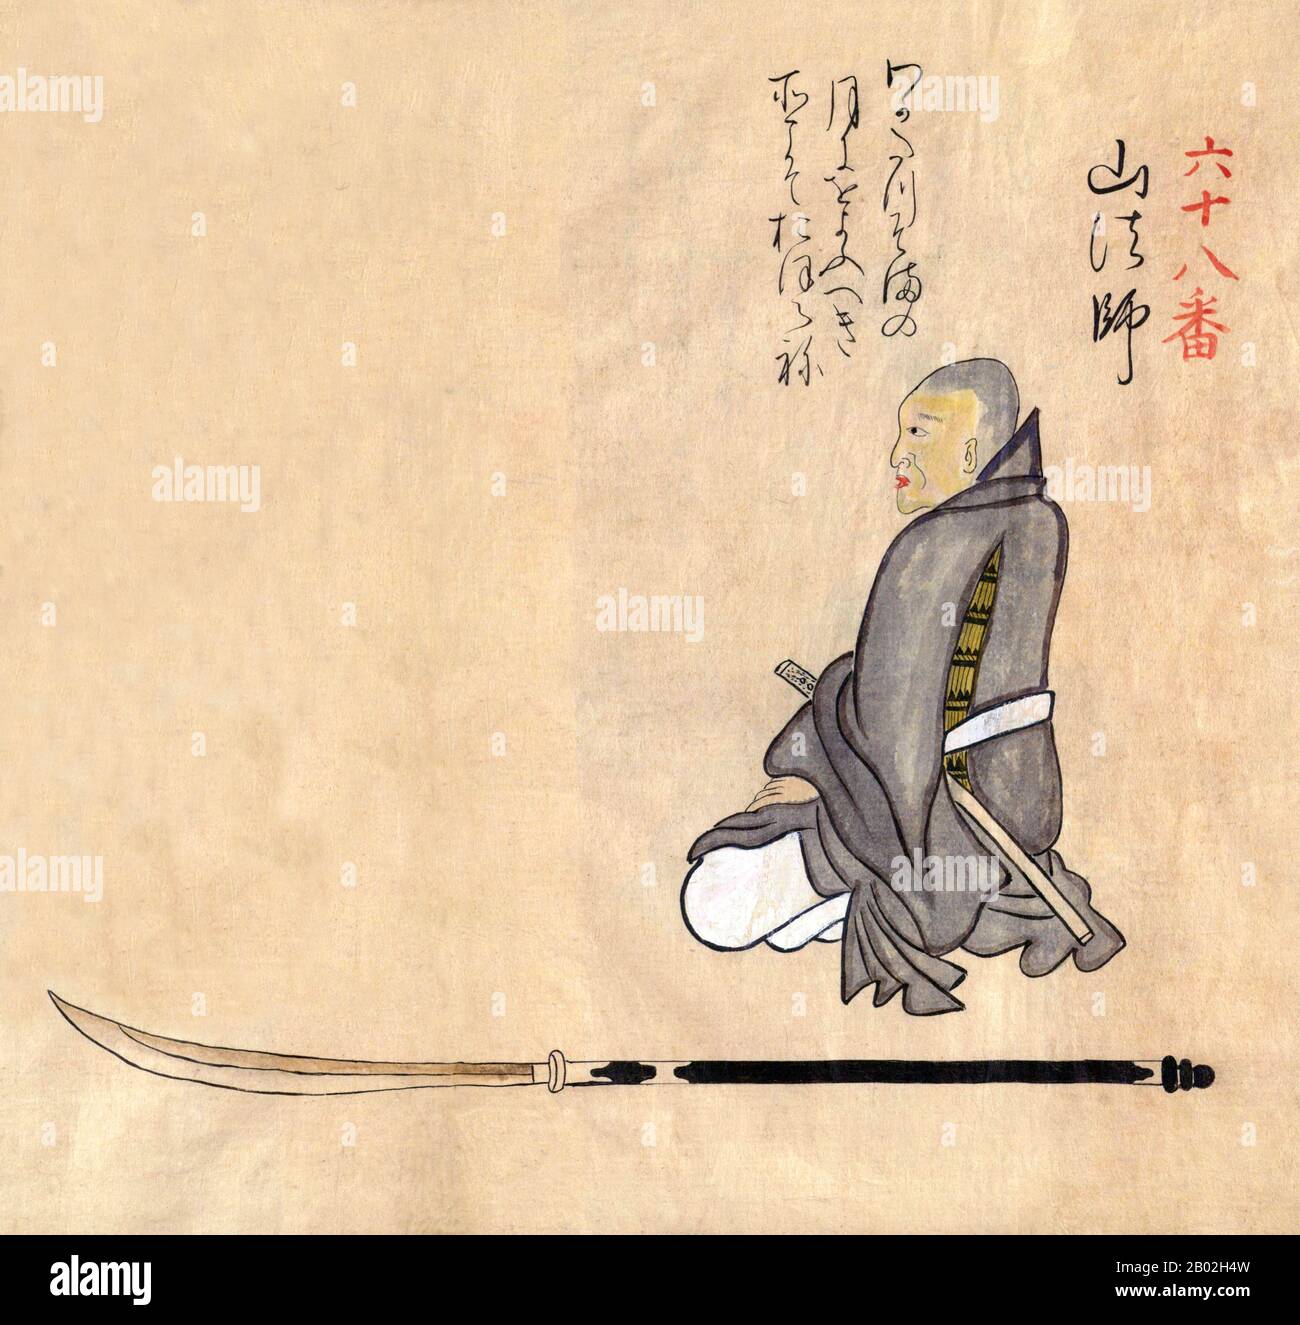 Japon: Artisanat et métiers traditionnels du 18th siècle d'un album peint à la main par un artiste anonyme. Folio 68: Un guerrier, peut-être un shinobi mercenaire, portant une armure dissimulée et armé d'une épée wakizashi et d'une naginata. Illustration colorée à la main d'une miscellane japonaise sur les métiers, l'artisanat et les coutumes traditionnels au milieu du 18th siècle au Japon, date de l'ère Meiwa (1764-1772) année 6 (c. 1770 ce). Banque D'Images